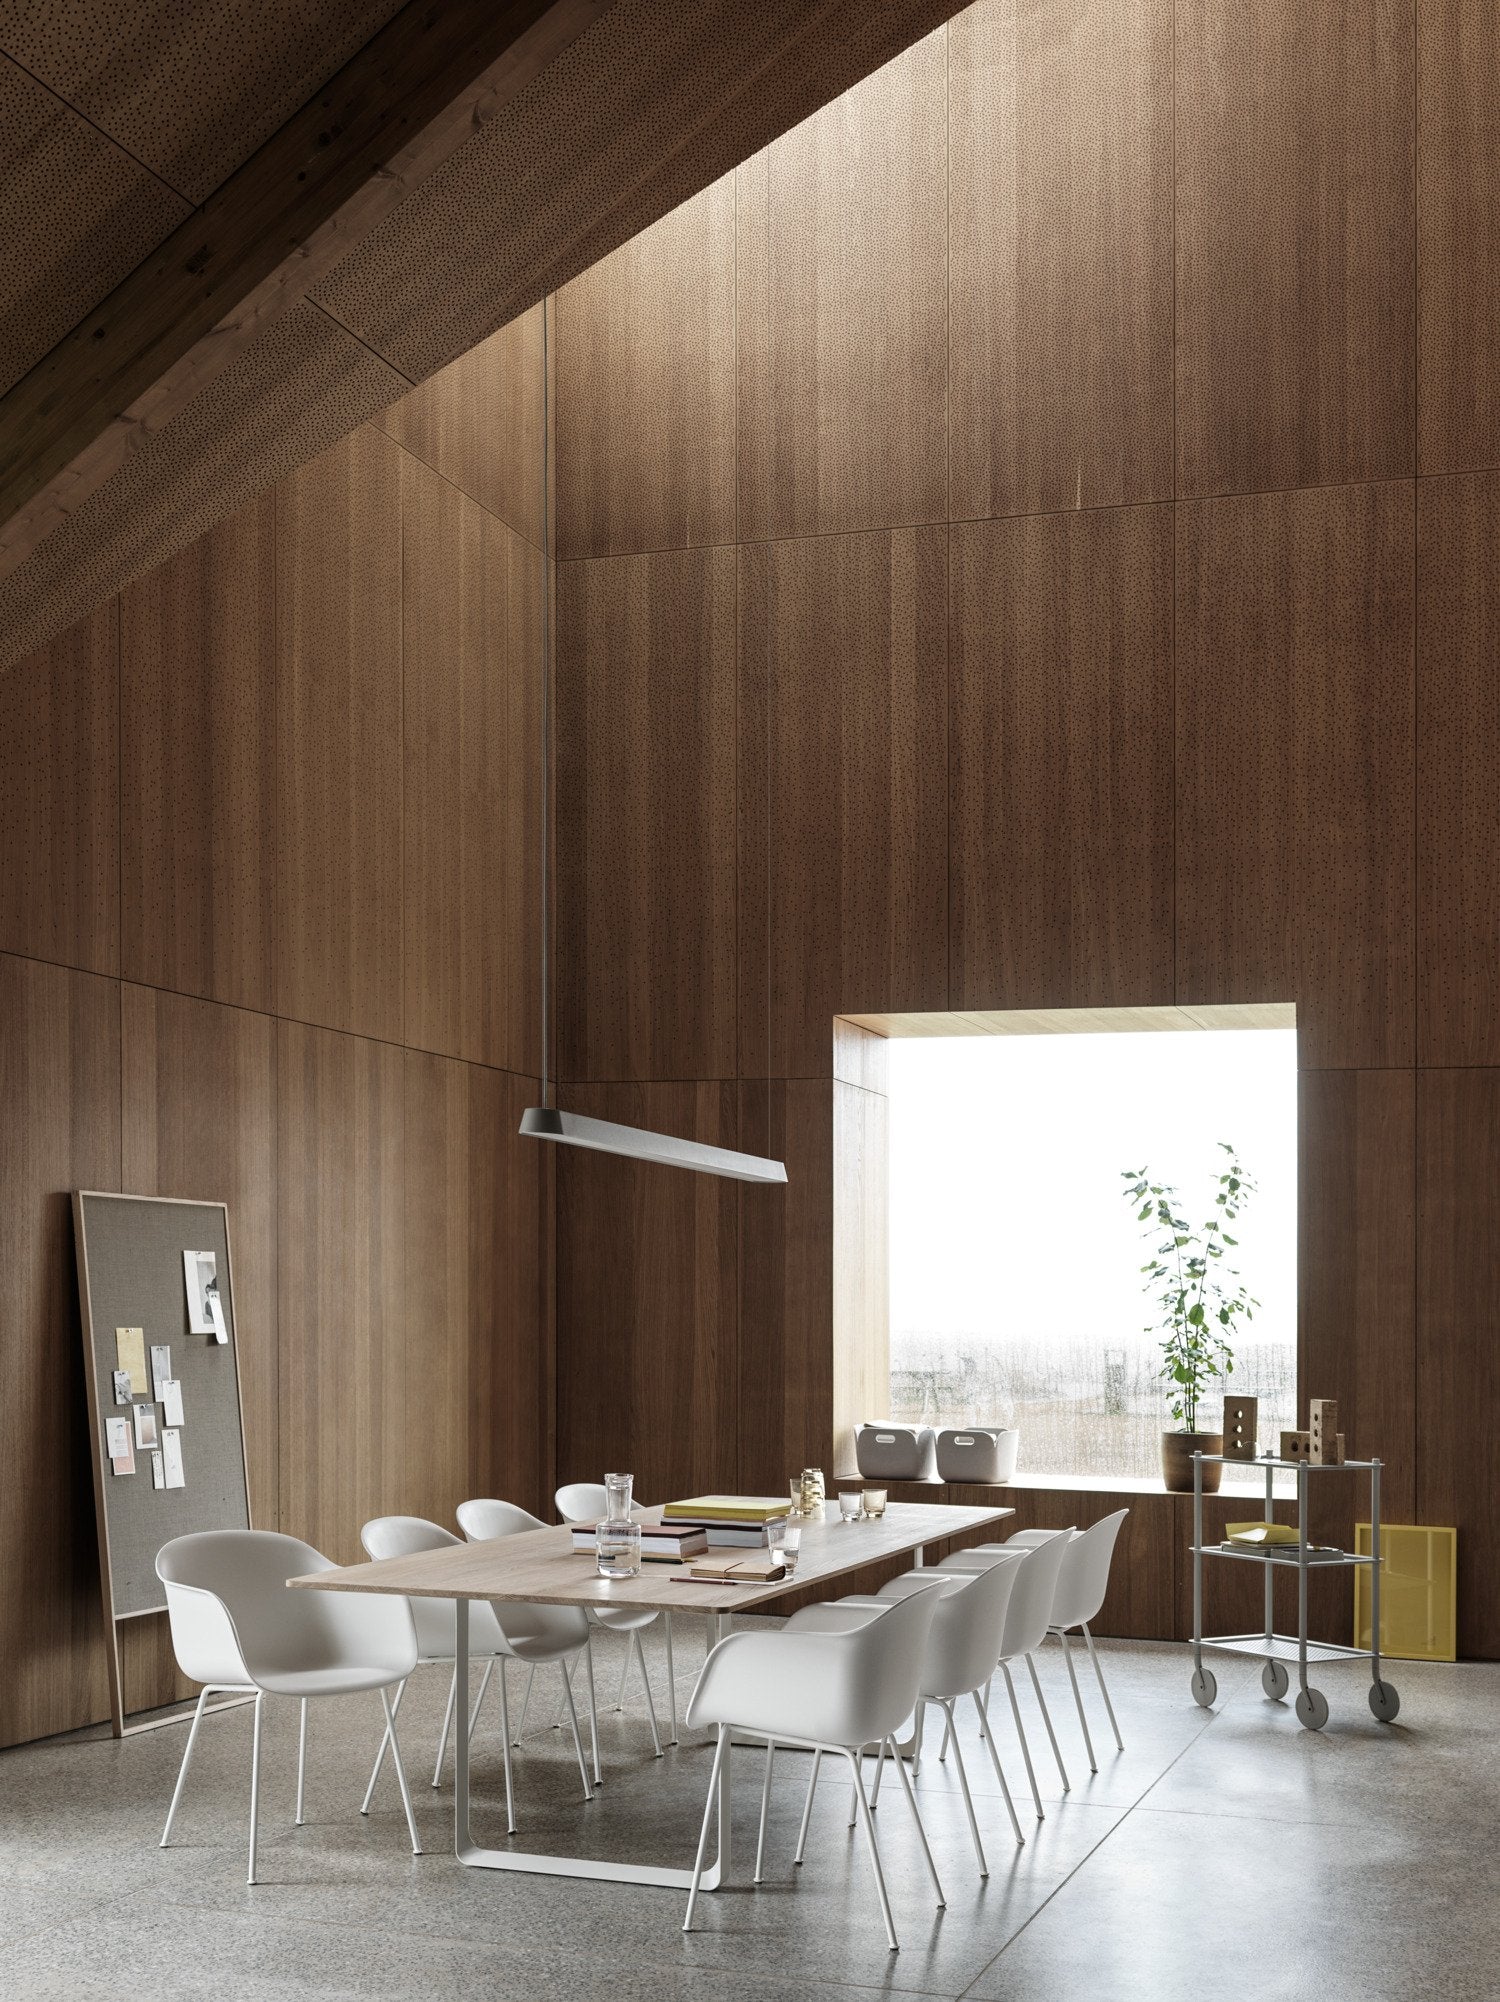 70/70 Tisch in Eiche massiv / Grau präsentiert im Onlineshop von KAQTU Design AG. Esstisch ist von Muuto